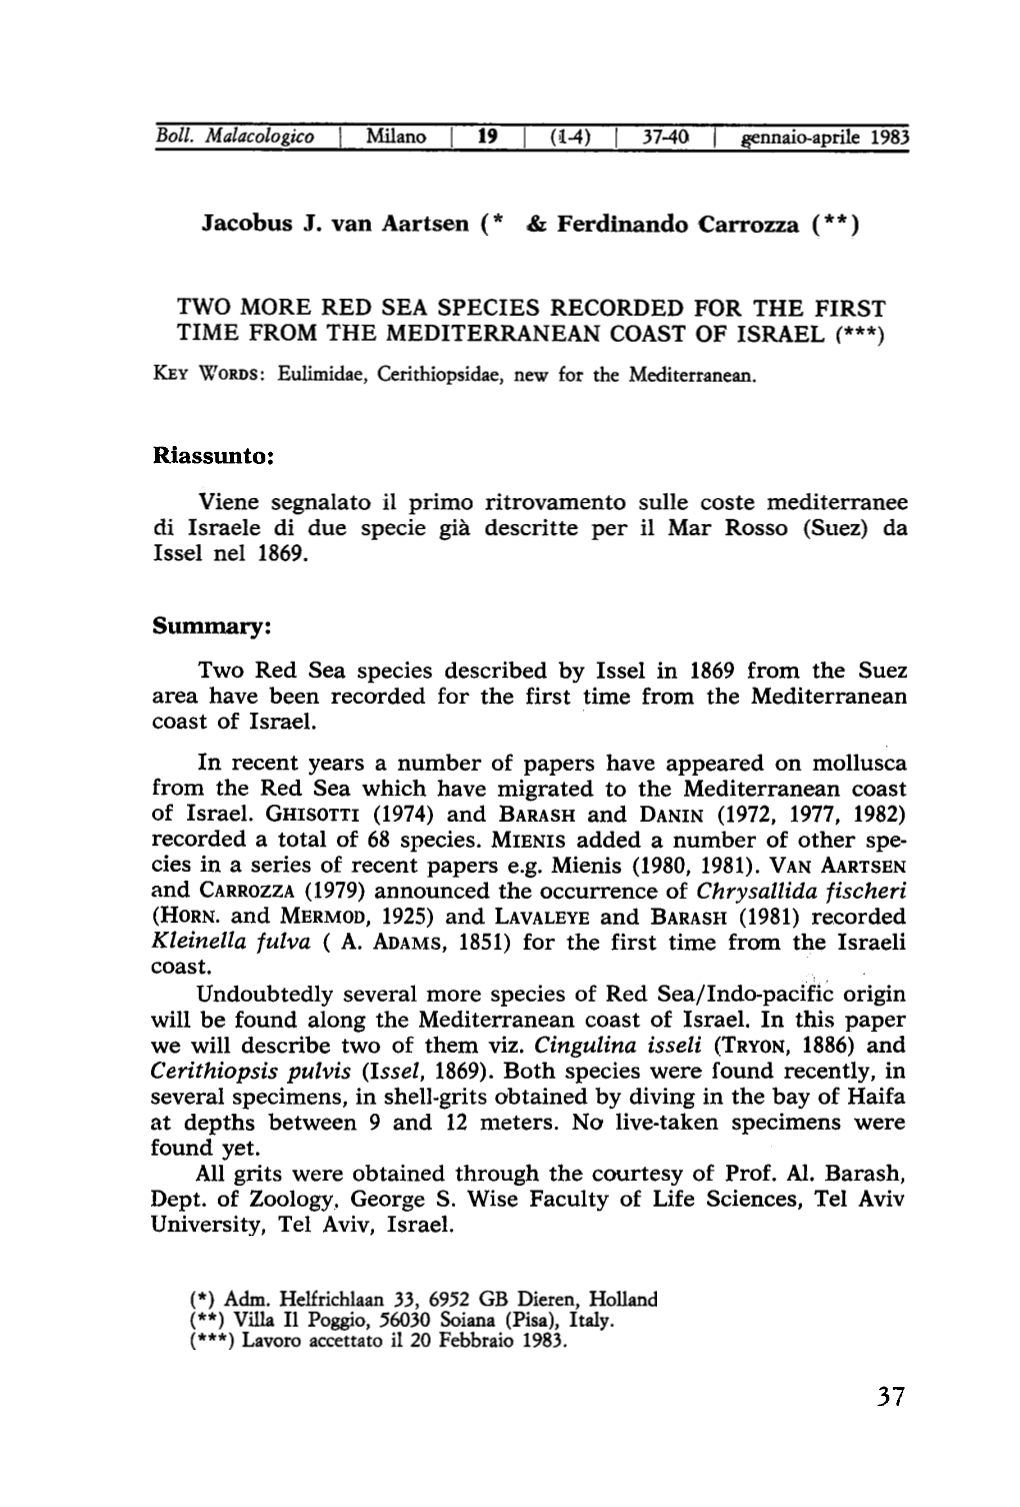 Riassunto: Viene Segnalato Il Primo Ritrovamento Sulle Coste Mediterranee Di Israele Di Due Specie Già Descritte Per Il Mar Rosso (Suez) Da Issel Nel 1869